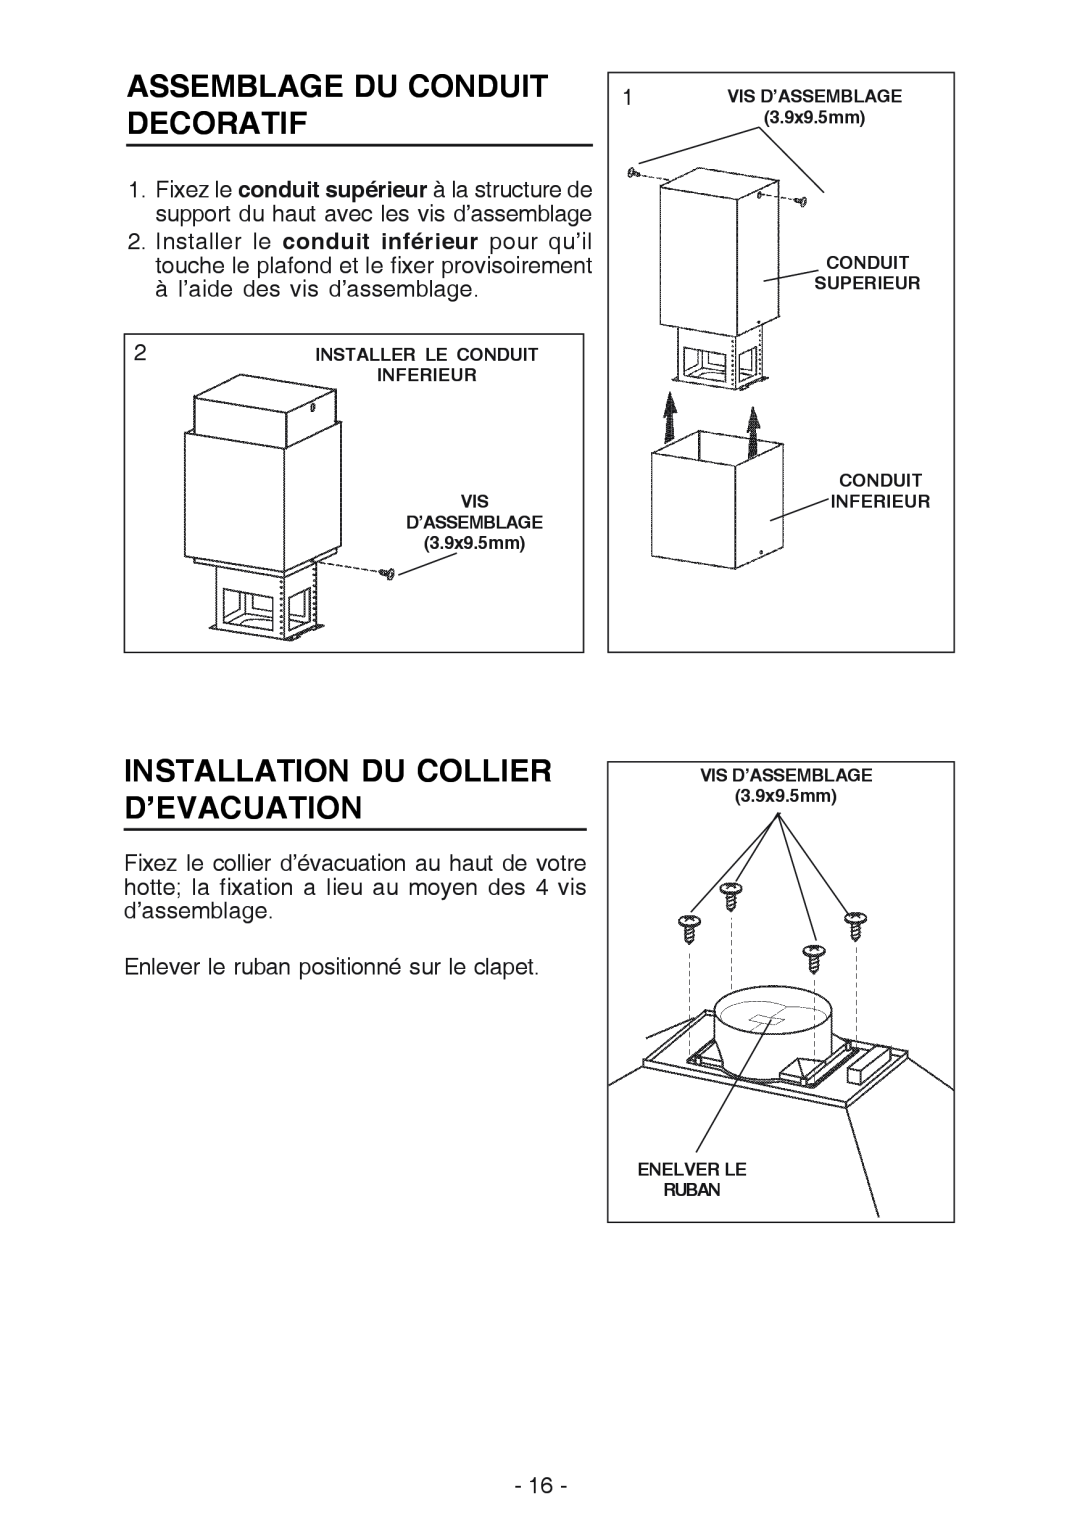 Broan 637004 manual Assemblage Du Conduit Decoratif, Installation Du Collier D’Evacuation 